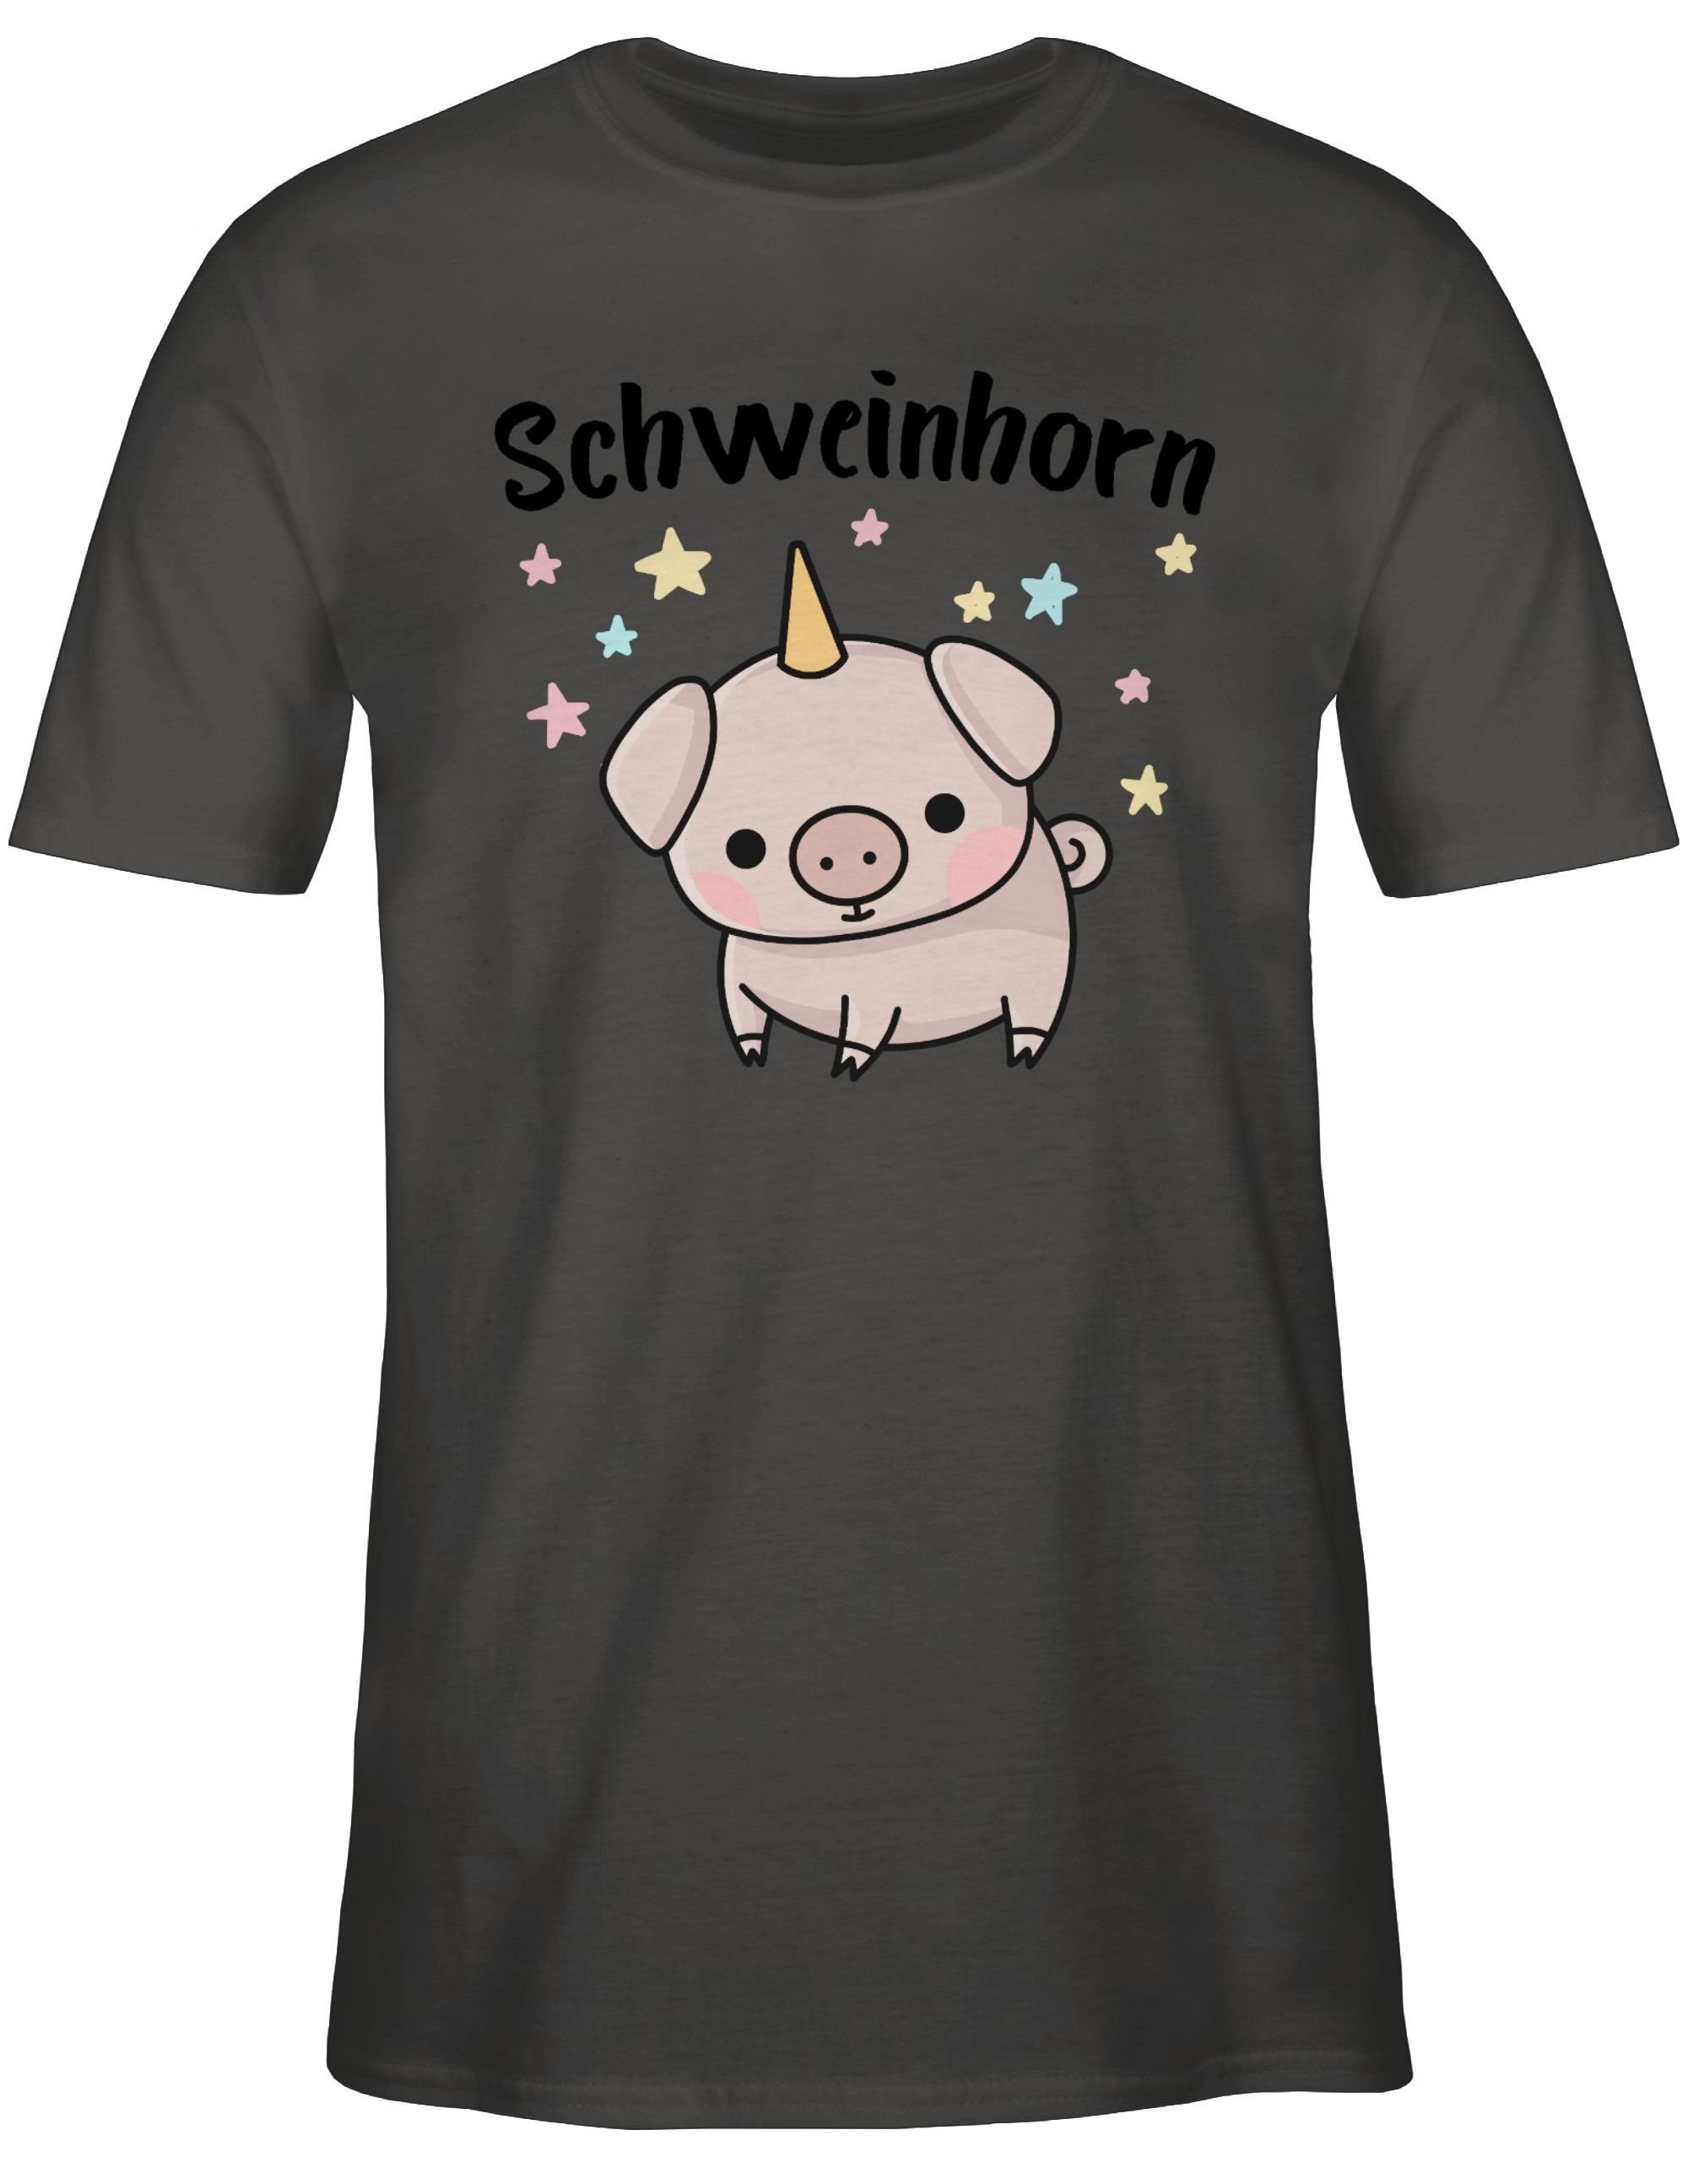 T-Shirt Schweinhorn Shirtracer Dunkelgrau Outfit 1 Karneval